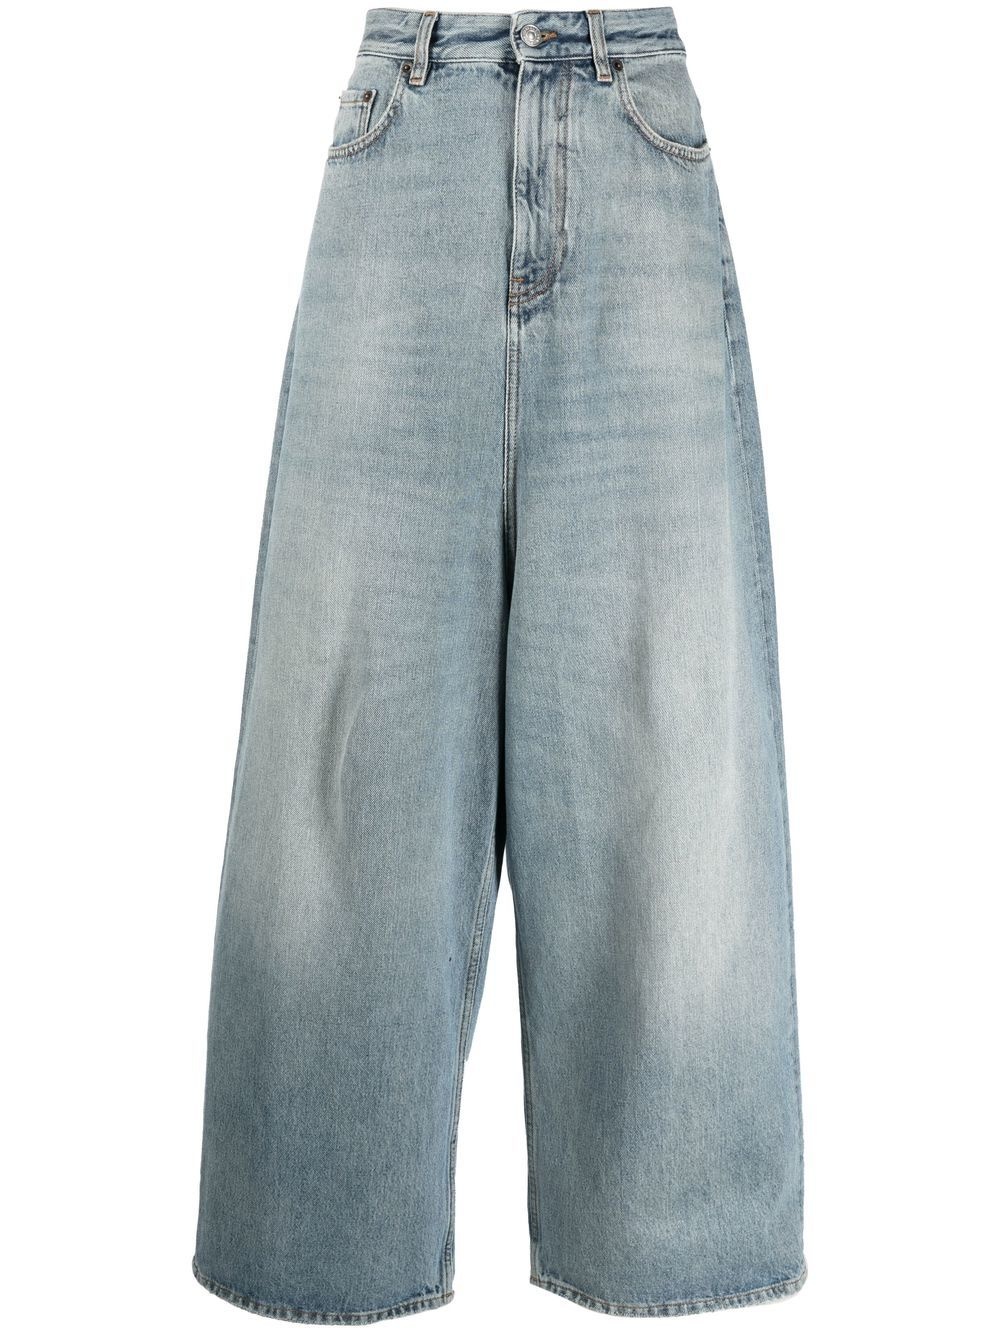 BALENCIAGA Low-crotch wide-leg jeans | REVERSIBLE